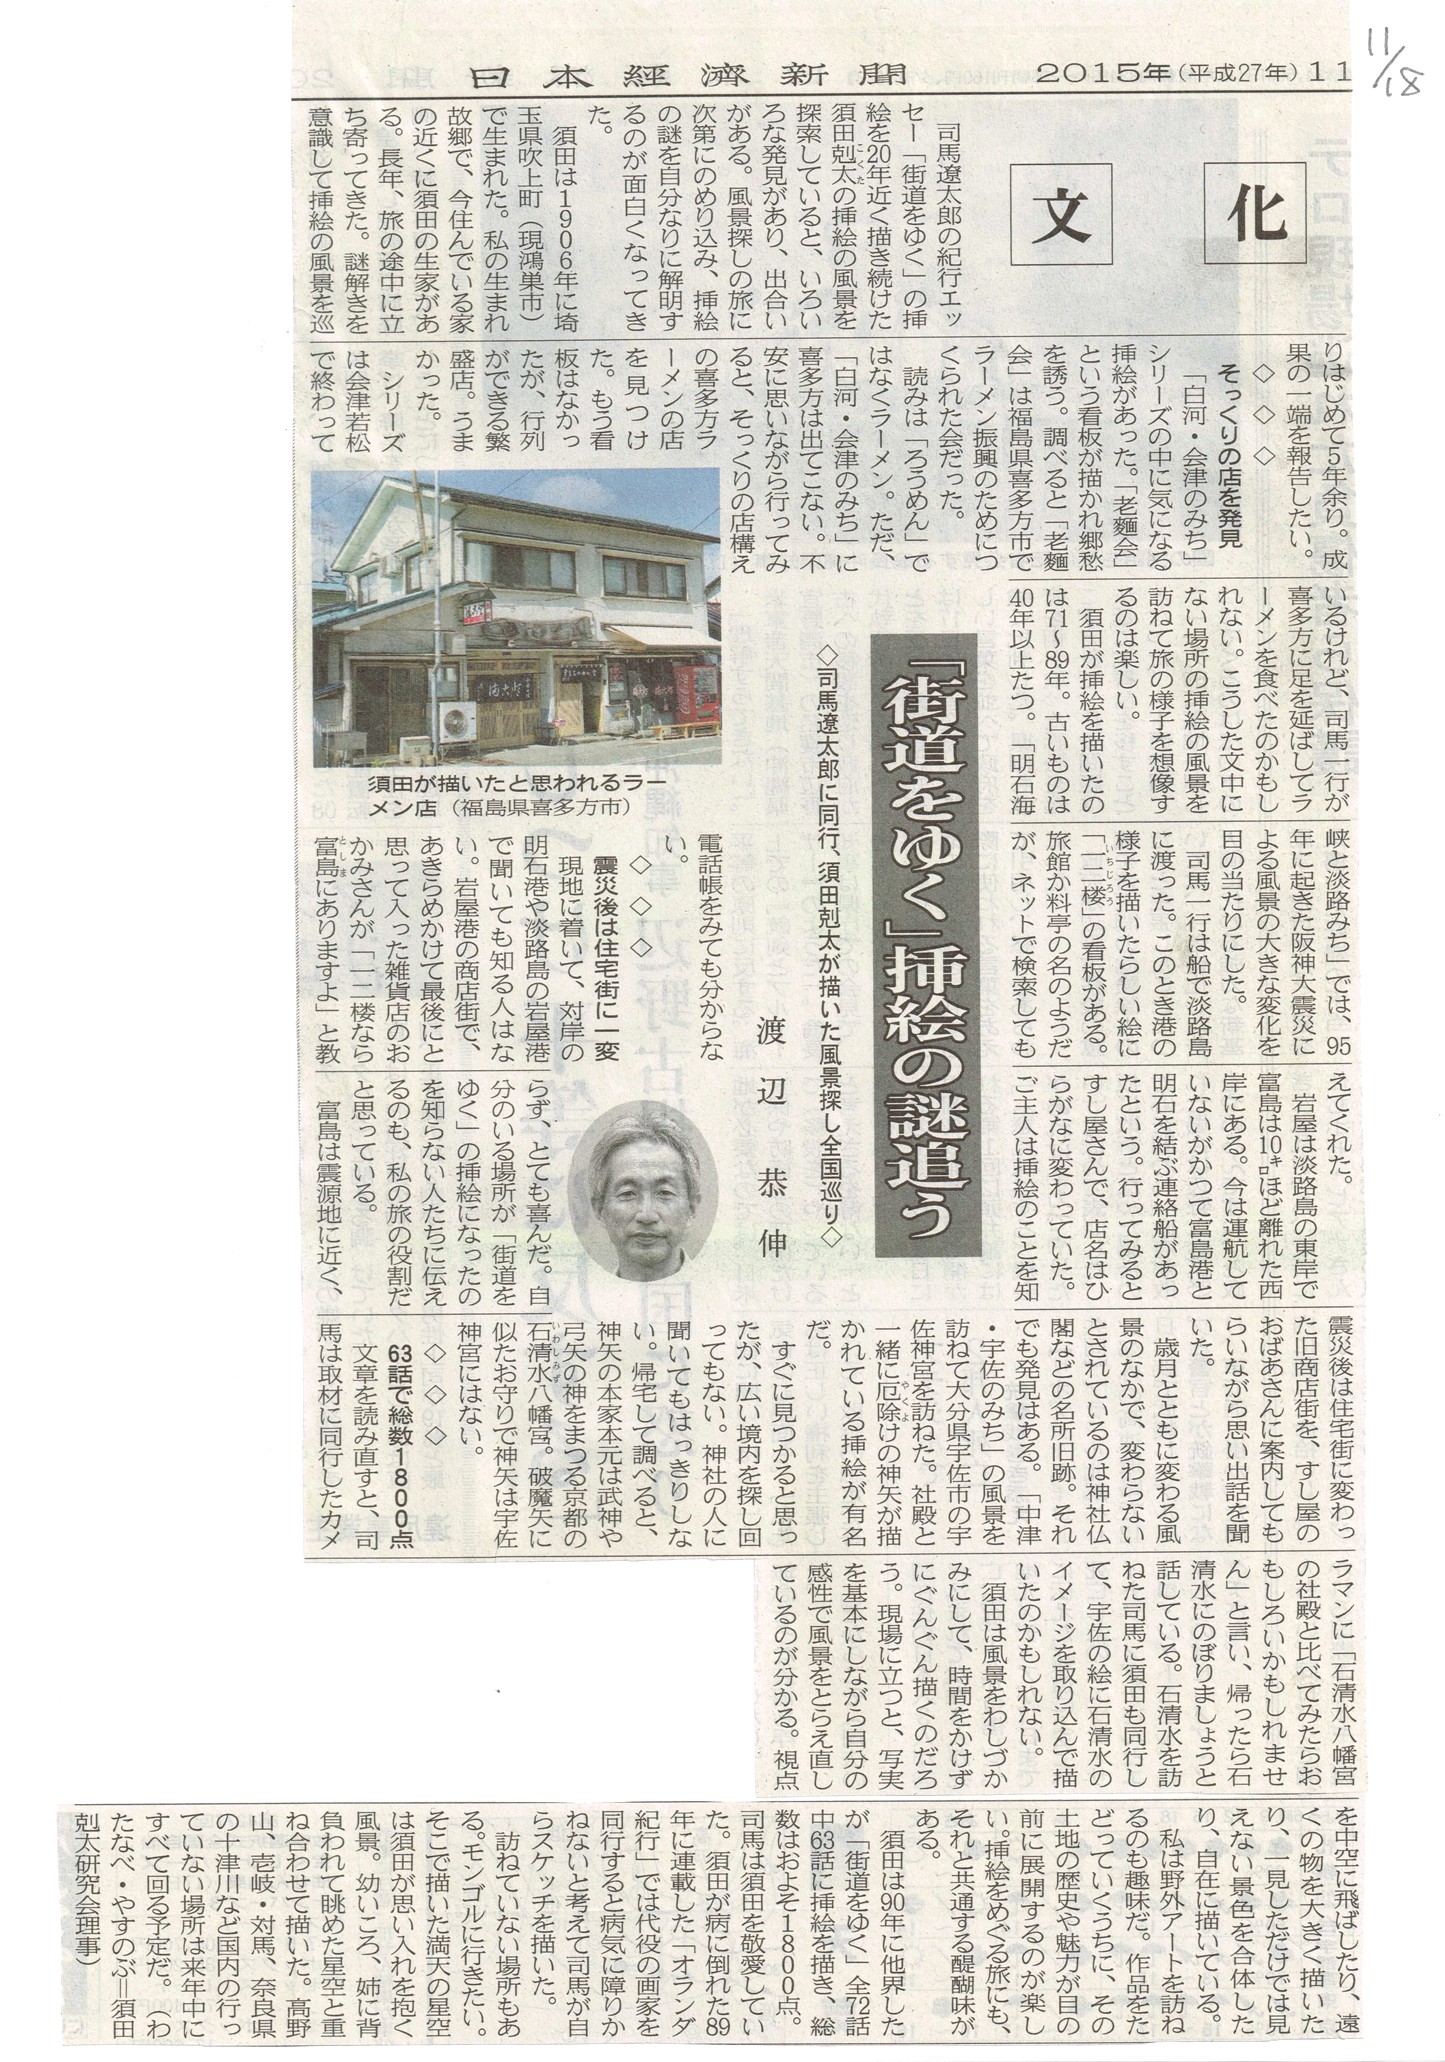 日本経済新聞「街道をゆく」の記事